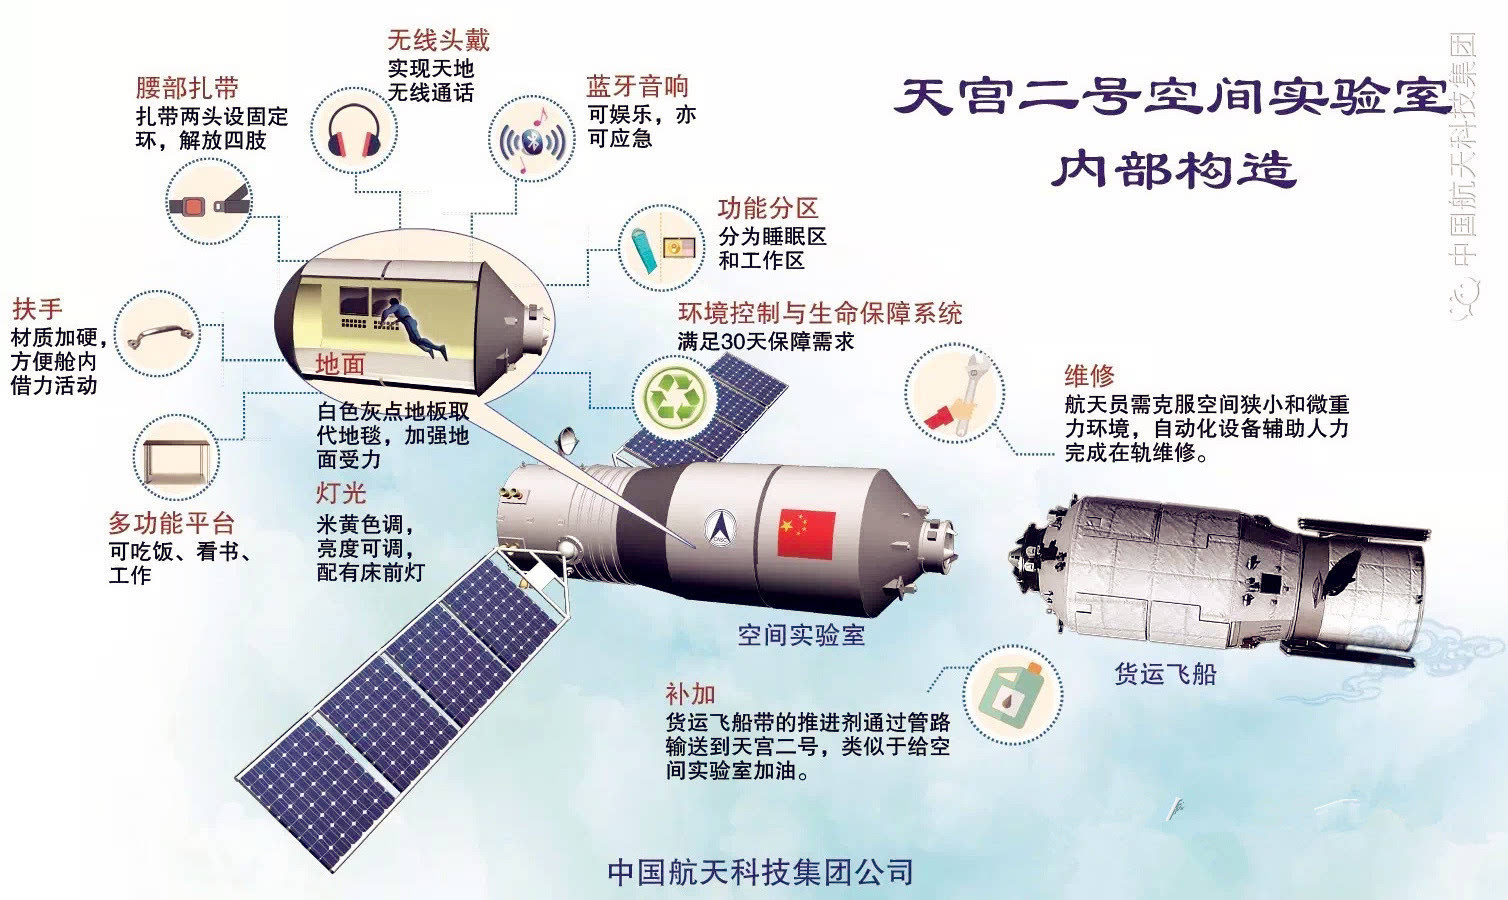 天宫二号:中国"最忙碌"空间实验室三大核心任务是什么?